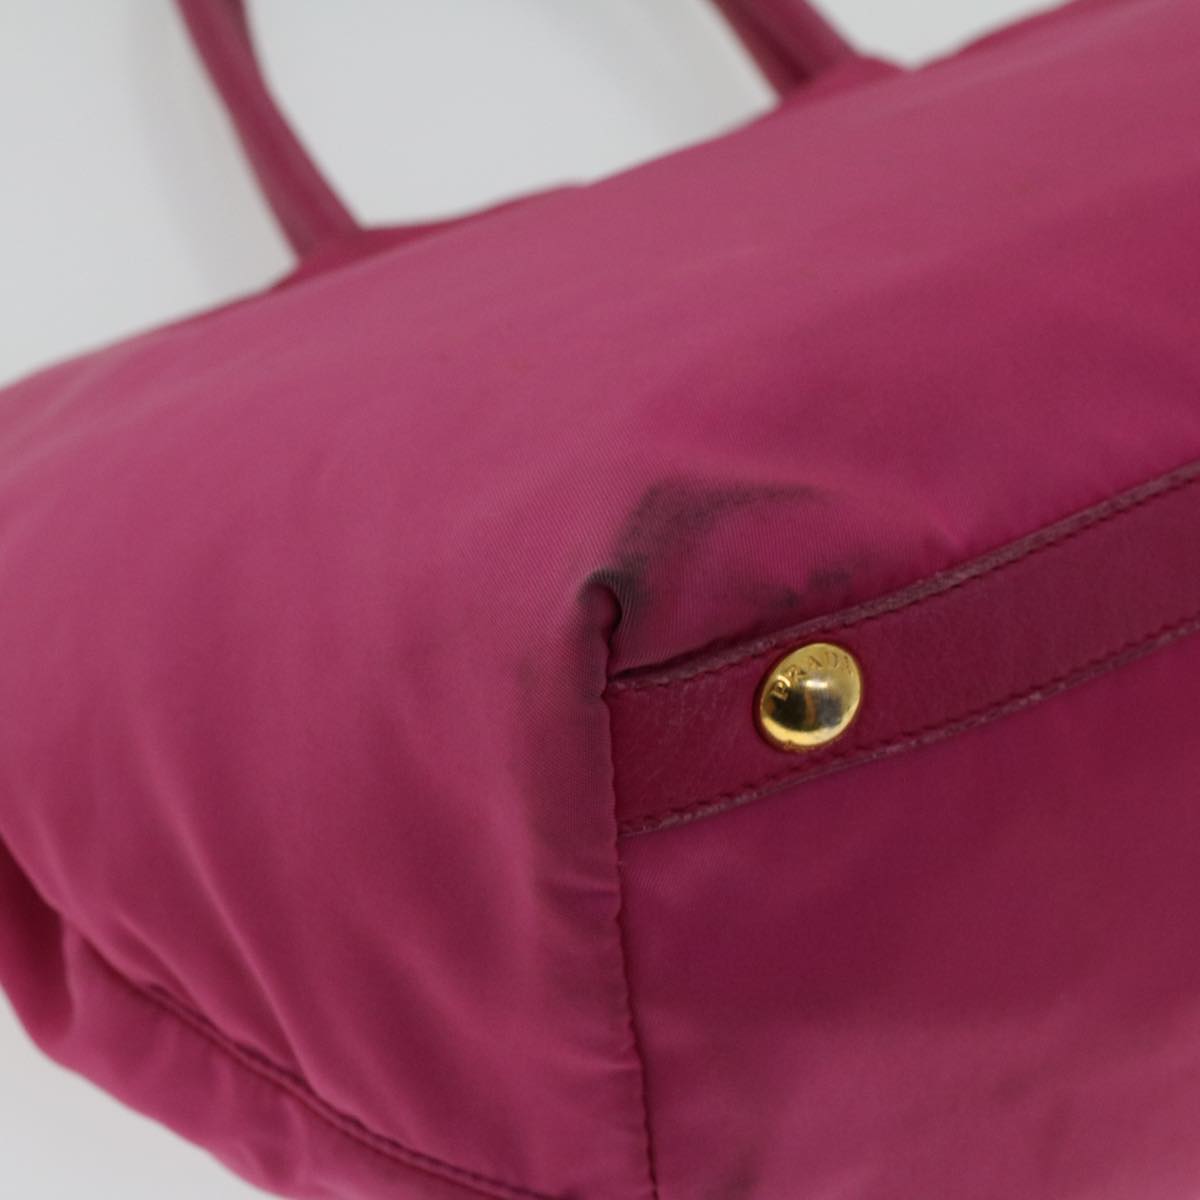 PRADA Tote Bag Nylon Pink Auth 43931